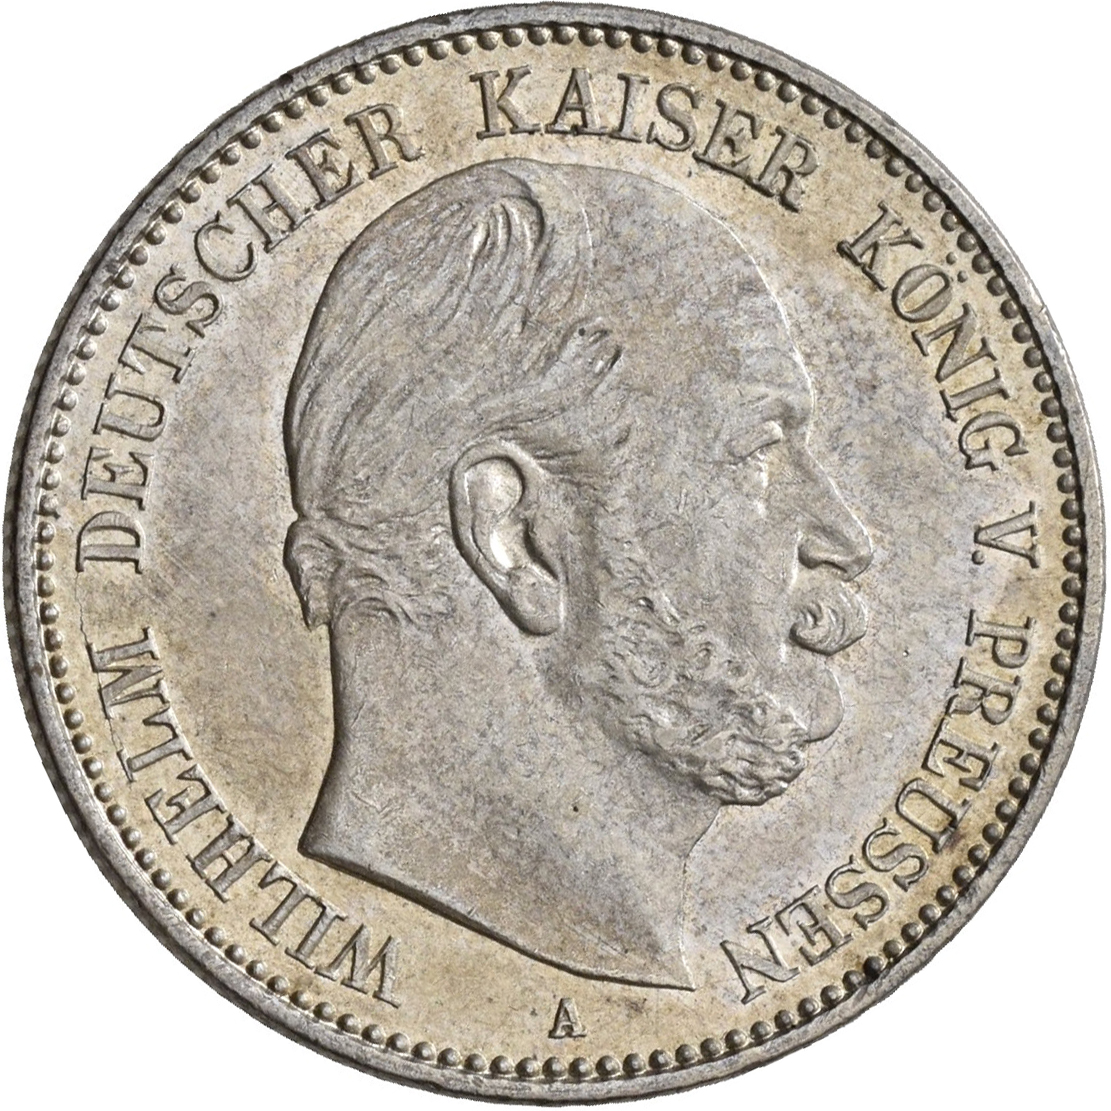 Lot 01592 - Preußen | Umlaufmünzen 2 Mark bis 5 Mark - Deutsches Kaiserreich  -  Auktionshaus Christoph Gärtner GmbH & Co. KG 54th AUCTION - Day 1 Coins & Banknotes